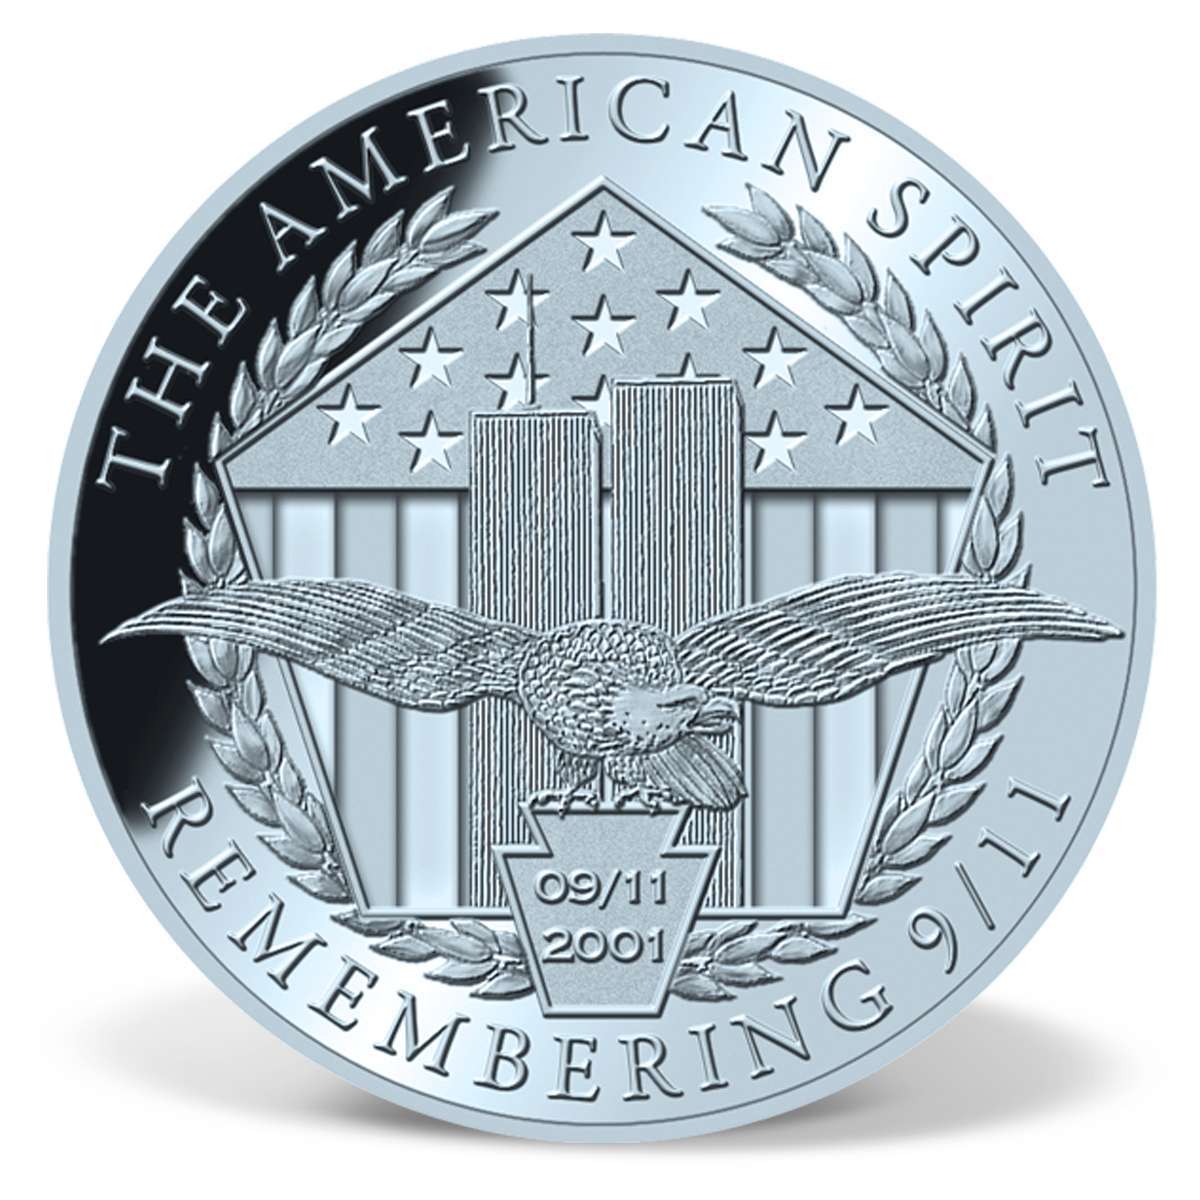 Justice Geronimo EKIA Precious Metal Coin Set | Gold ...